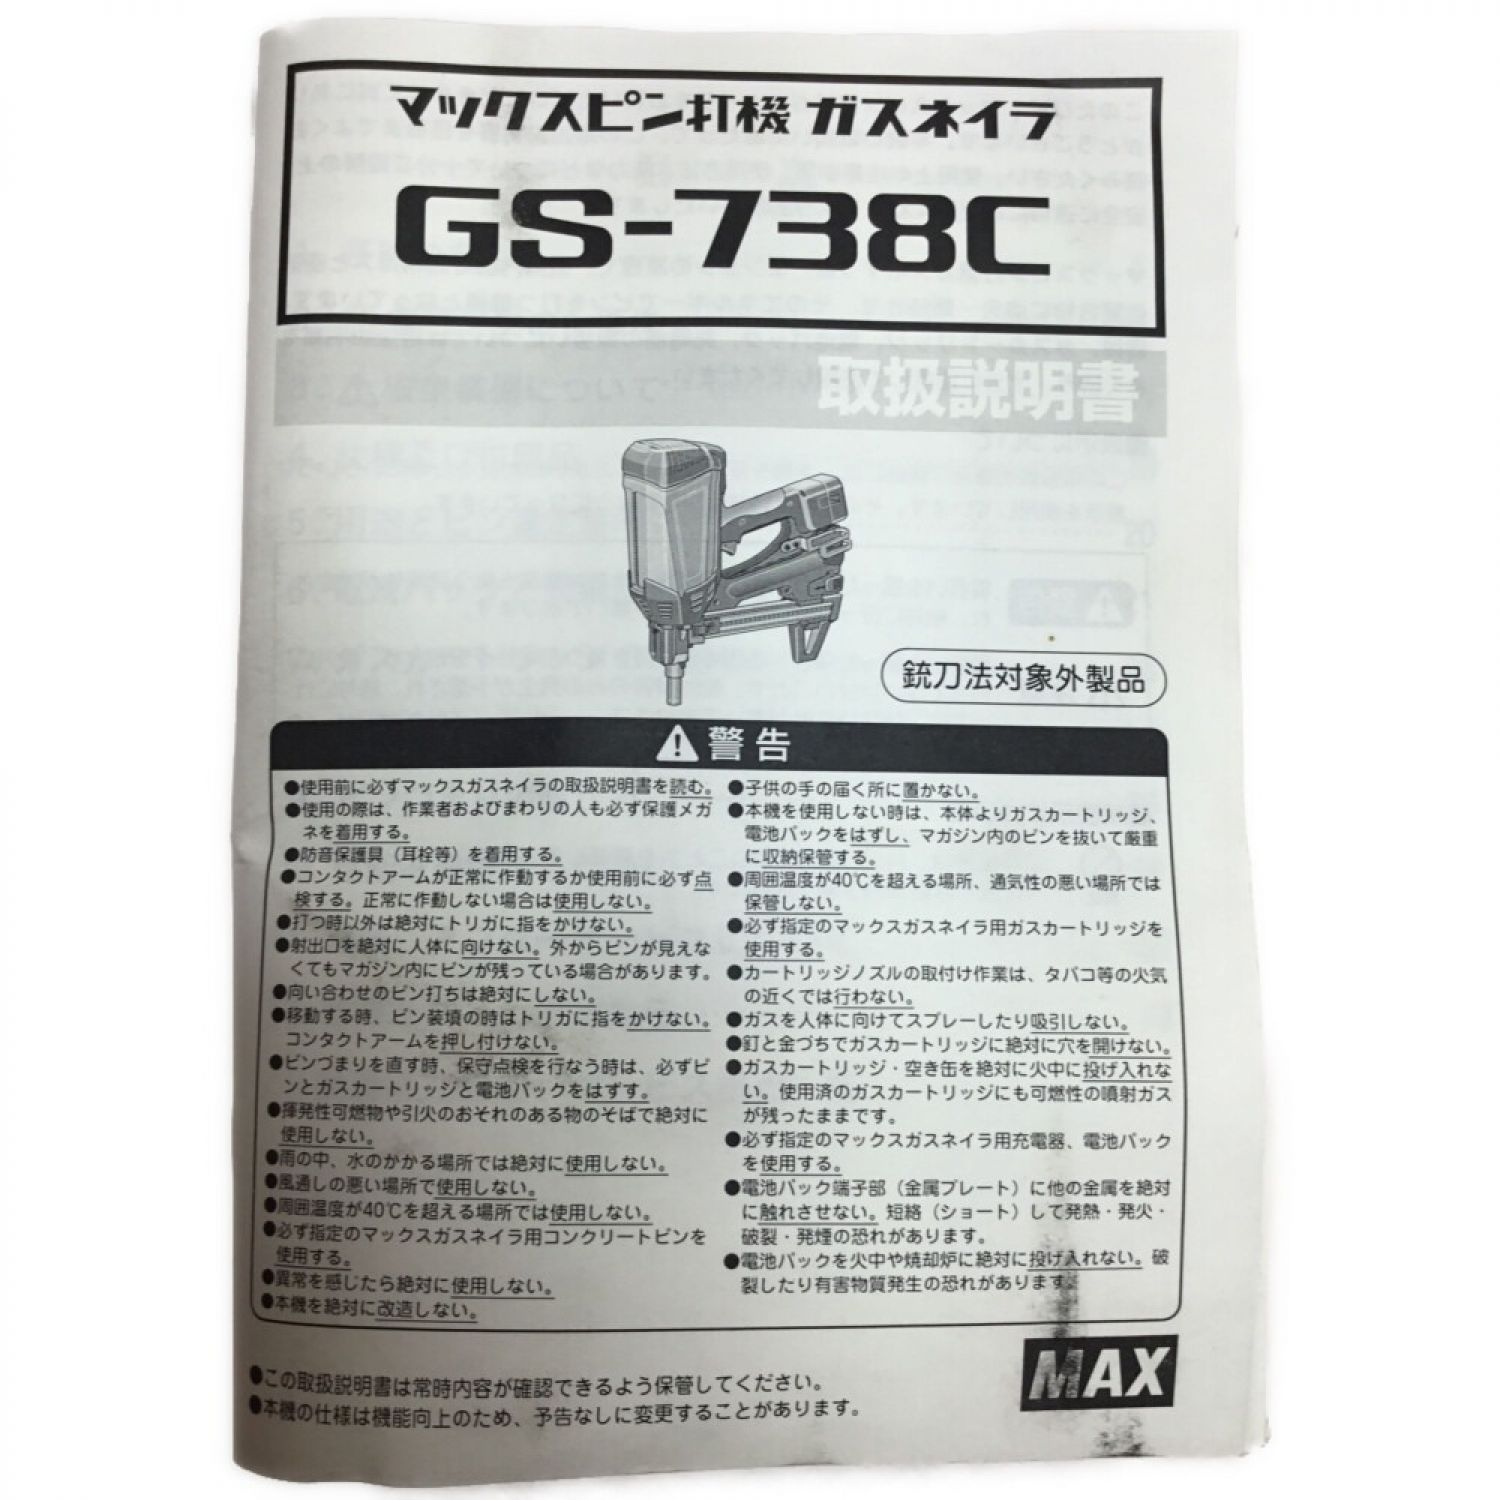 マックス ガスネイラ オレンジ (GS-738C) - 3